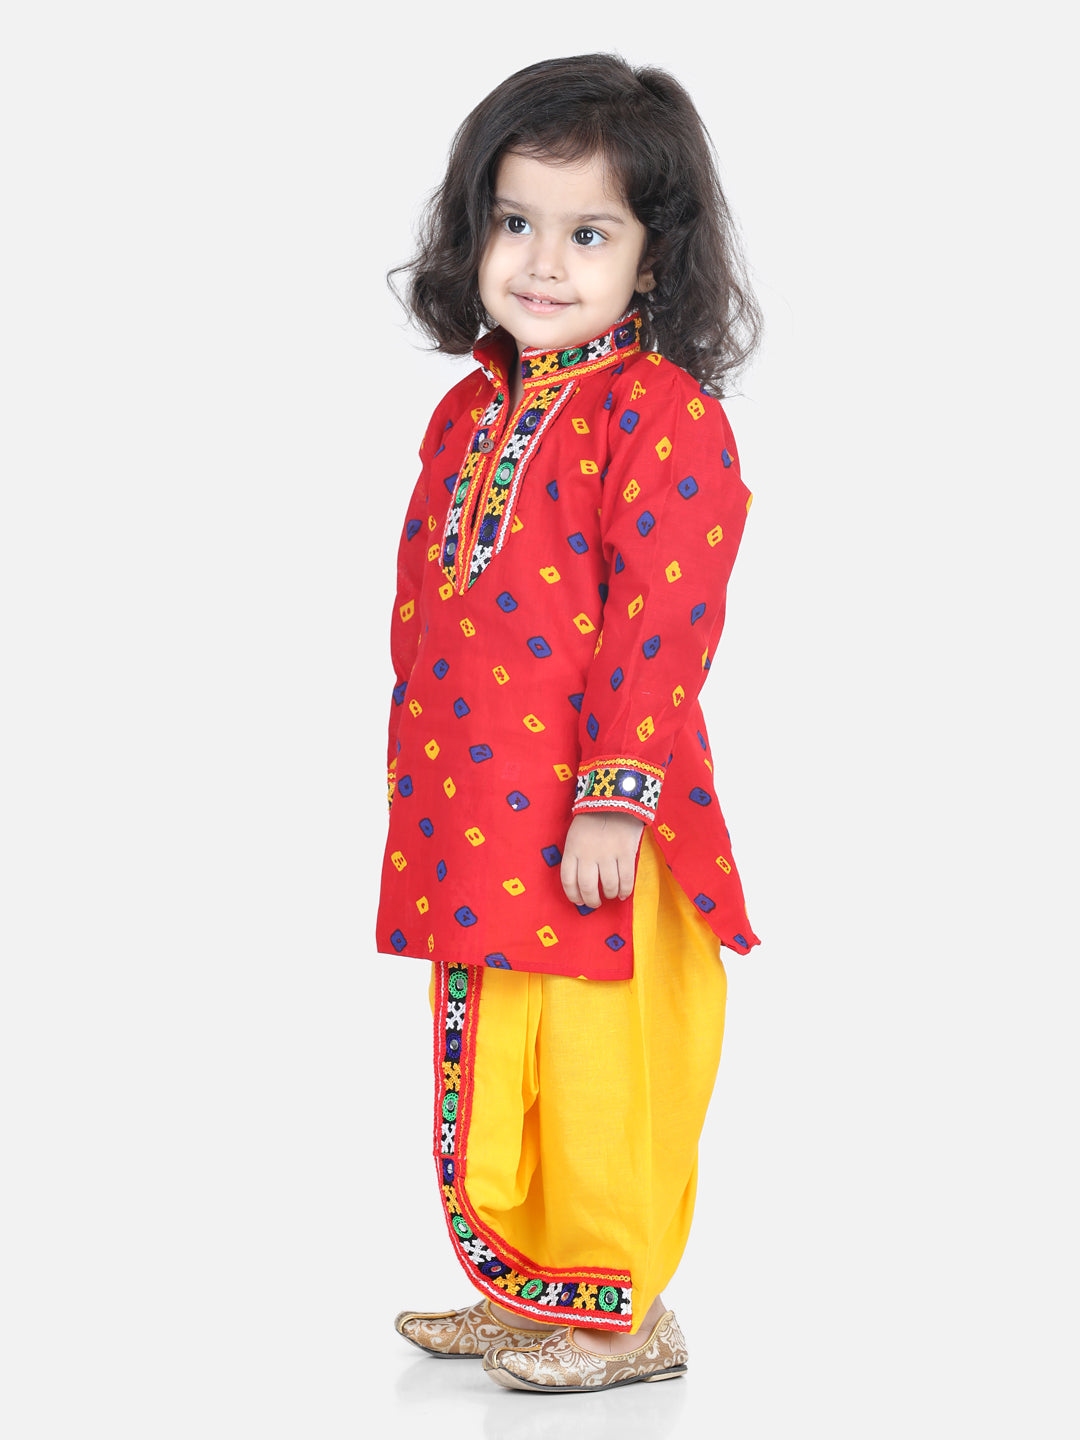 Bandhani Print Cotton Full Sleeve Dhoti Kurta- Red Halter Neck Choli With Dhoti-Red